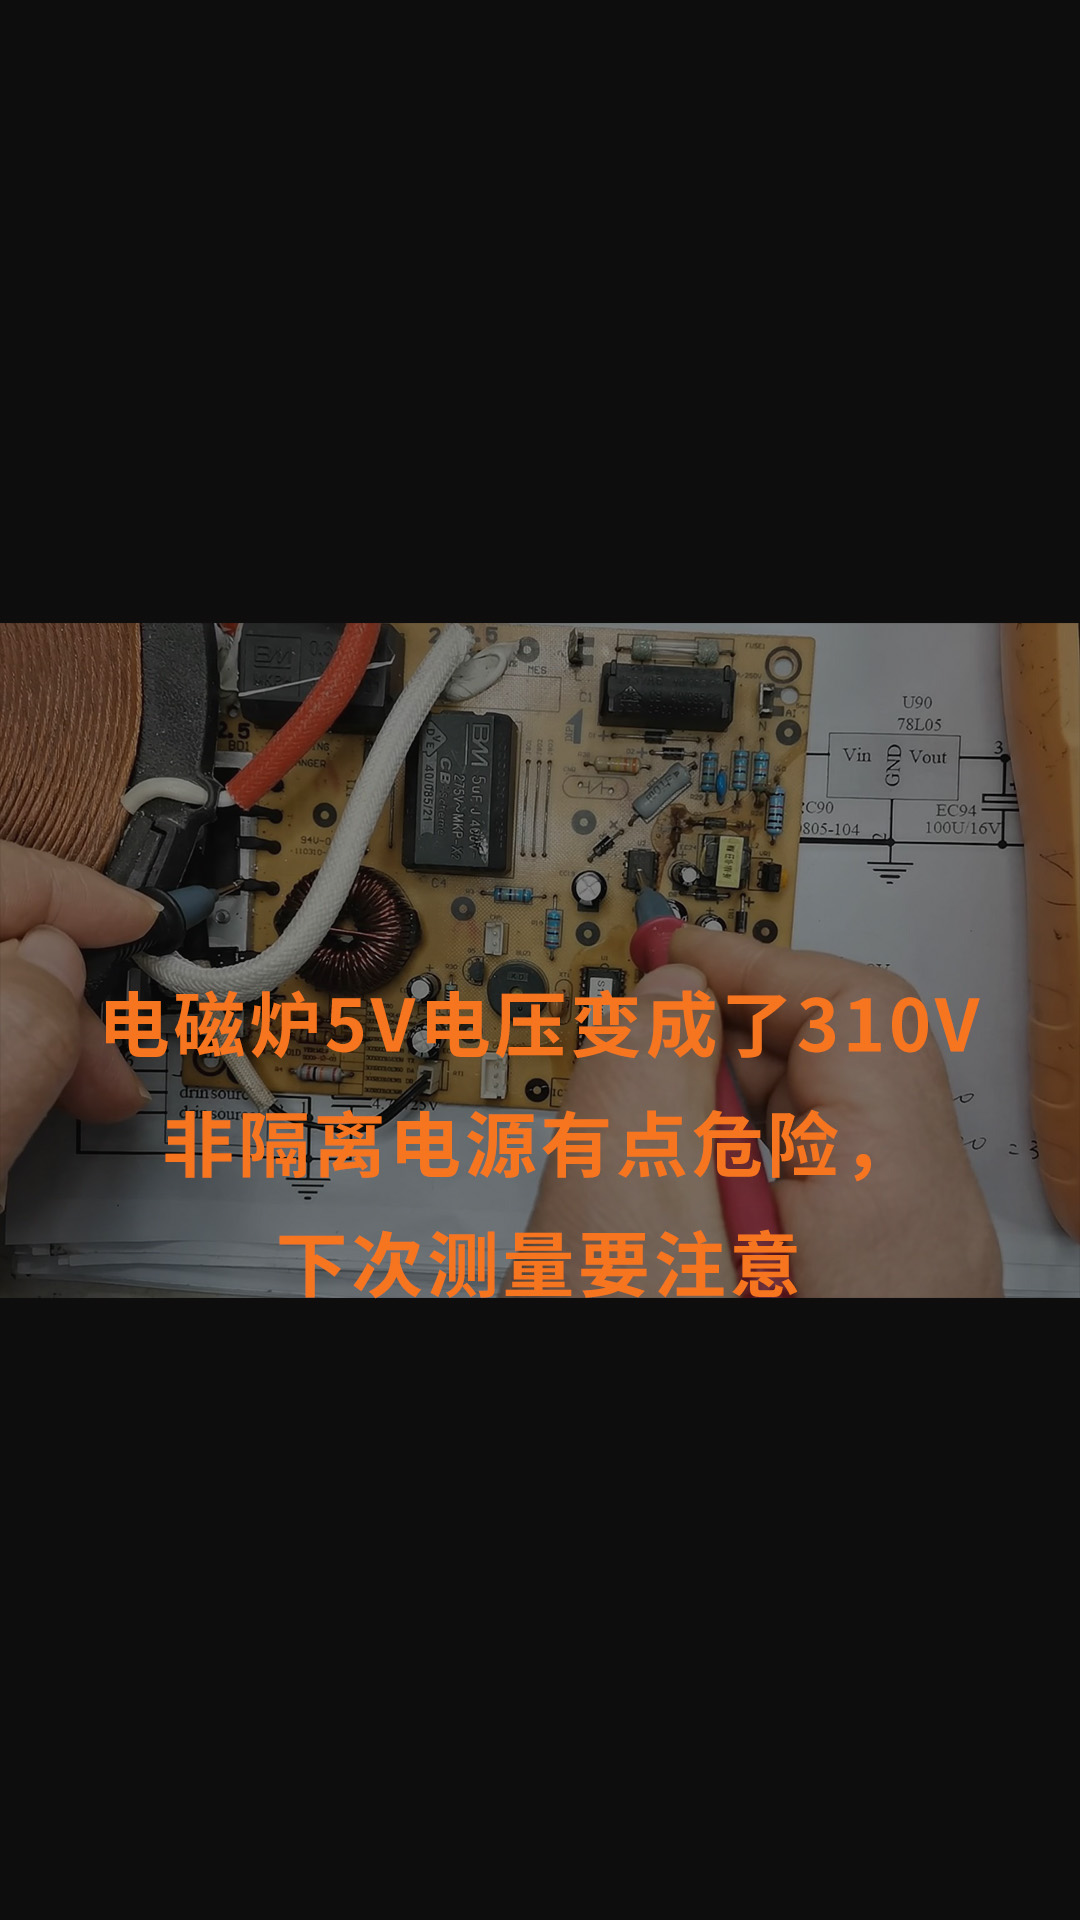 電磁爐5V電壓變成了310V非隔離電源有點危險，下次測量要注意